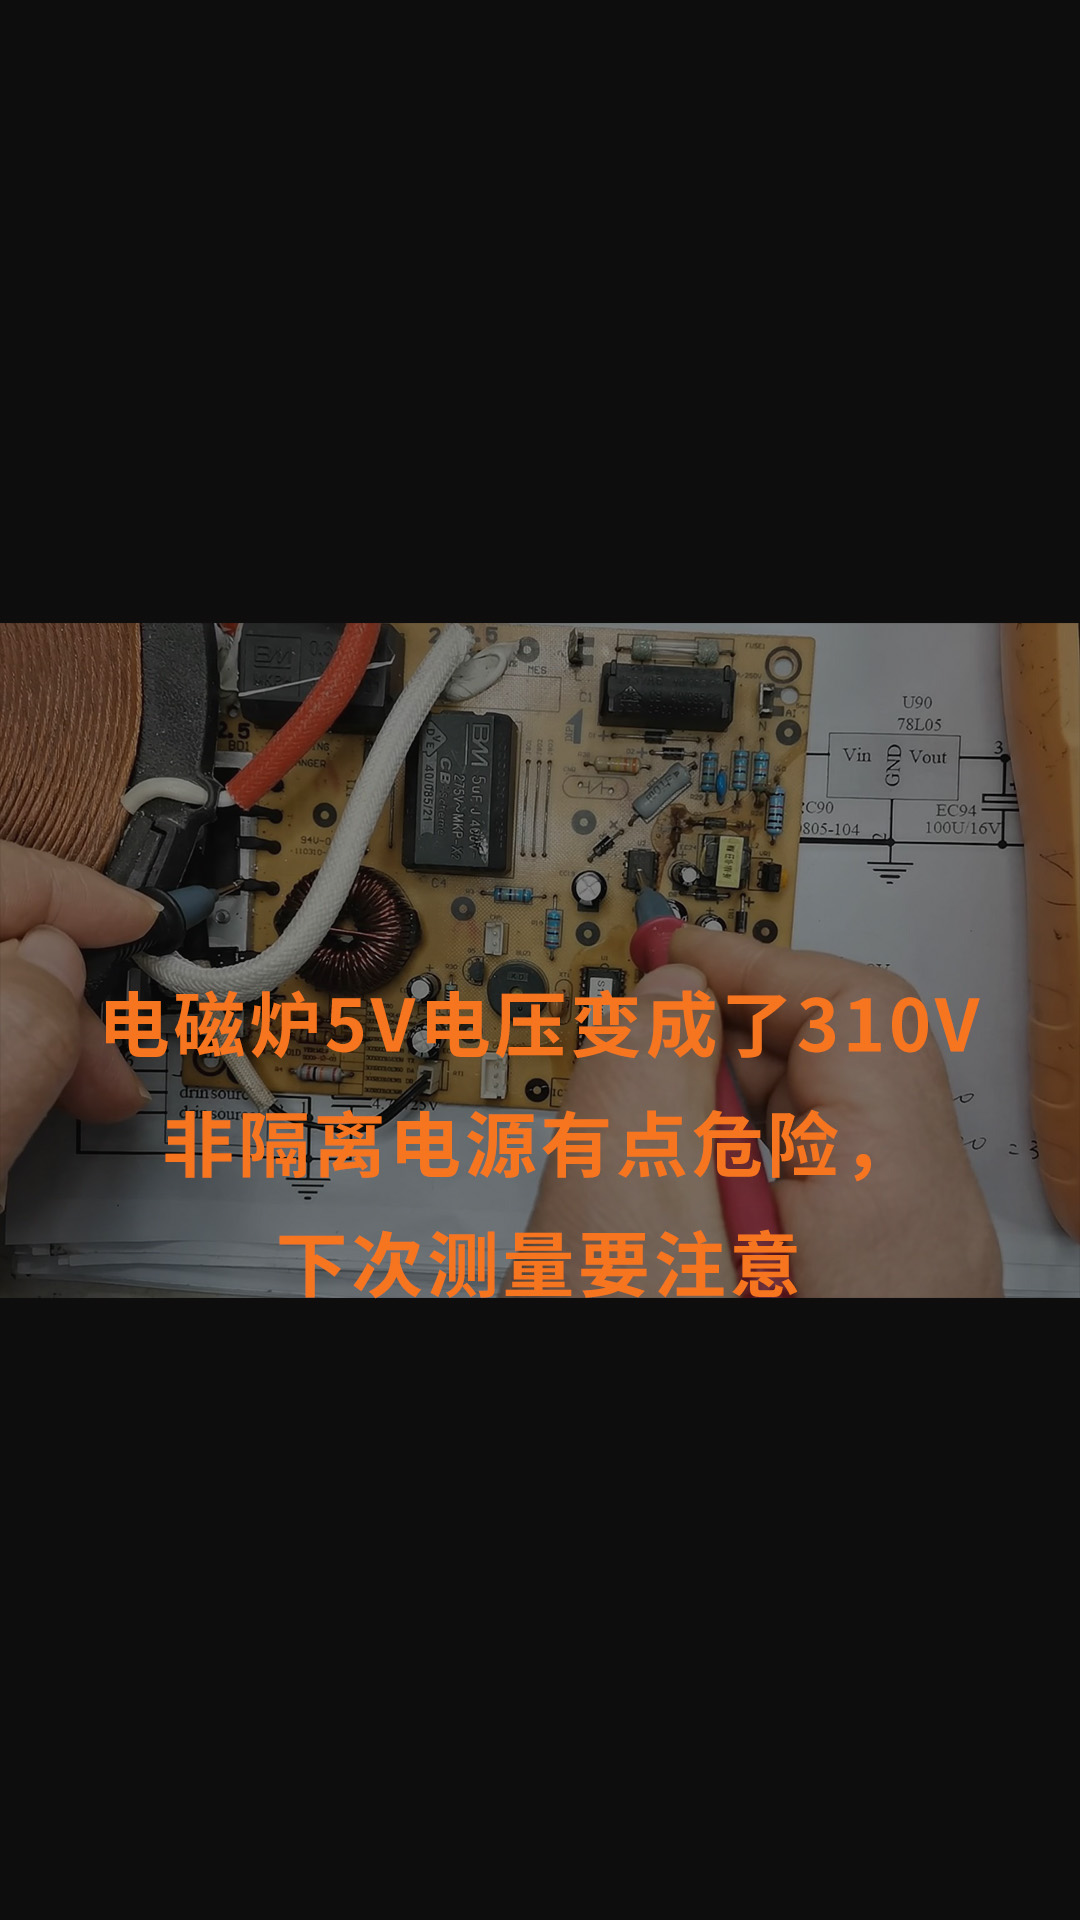 電磁爐5V電壓變成了310V非隔離電源有點危險，下次測量要注意